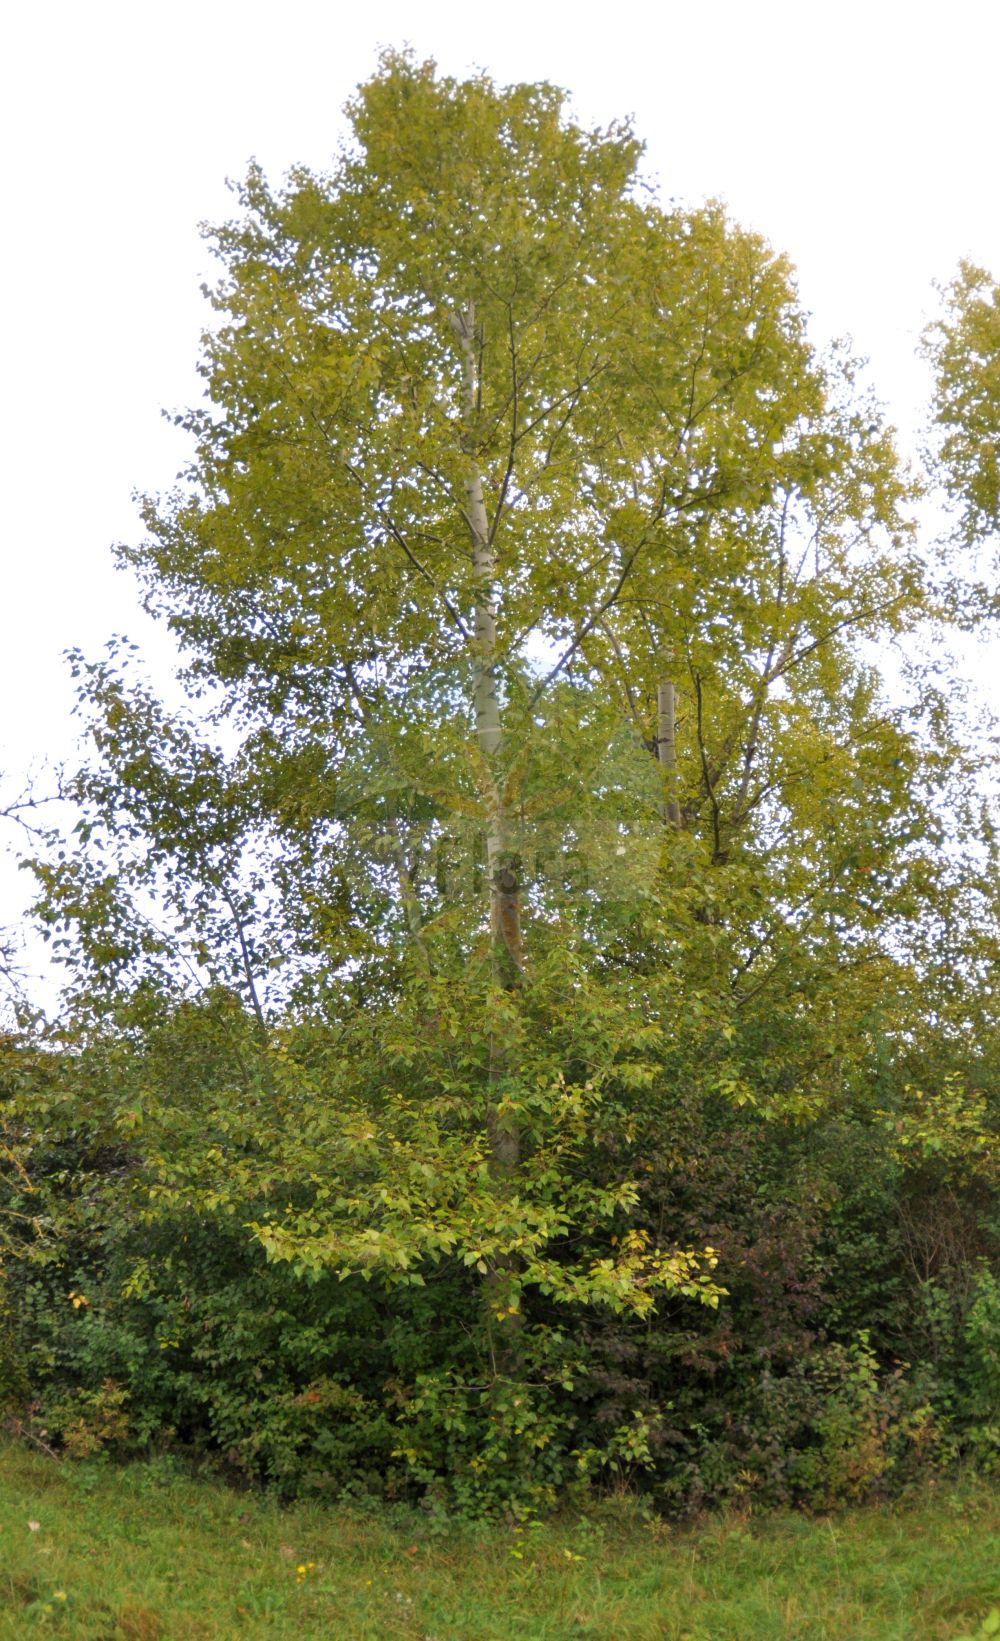 Foto von Populus balsamifera (Balsam-Pappel - Eastern Balsam-poplar). ---- Photo of Populus balsamifera (Balsam-Pappel - Eastern Balsam-poplar).(Populus balsamifera,Balsam-Pappel,Eastern Balsam-poplar,Populus balsamifera,Populus candicans,Populus longifolia,Populus tacamahaca,Populus tristis,Balsam-Pappel,Eastern Balsam-poplar,Balsam Poplar,Bam Tree,Hackmatack,Tacamahaca,Populus,Pappel,Poplar,Salicaceae,Weidengewächse,Willow family)